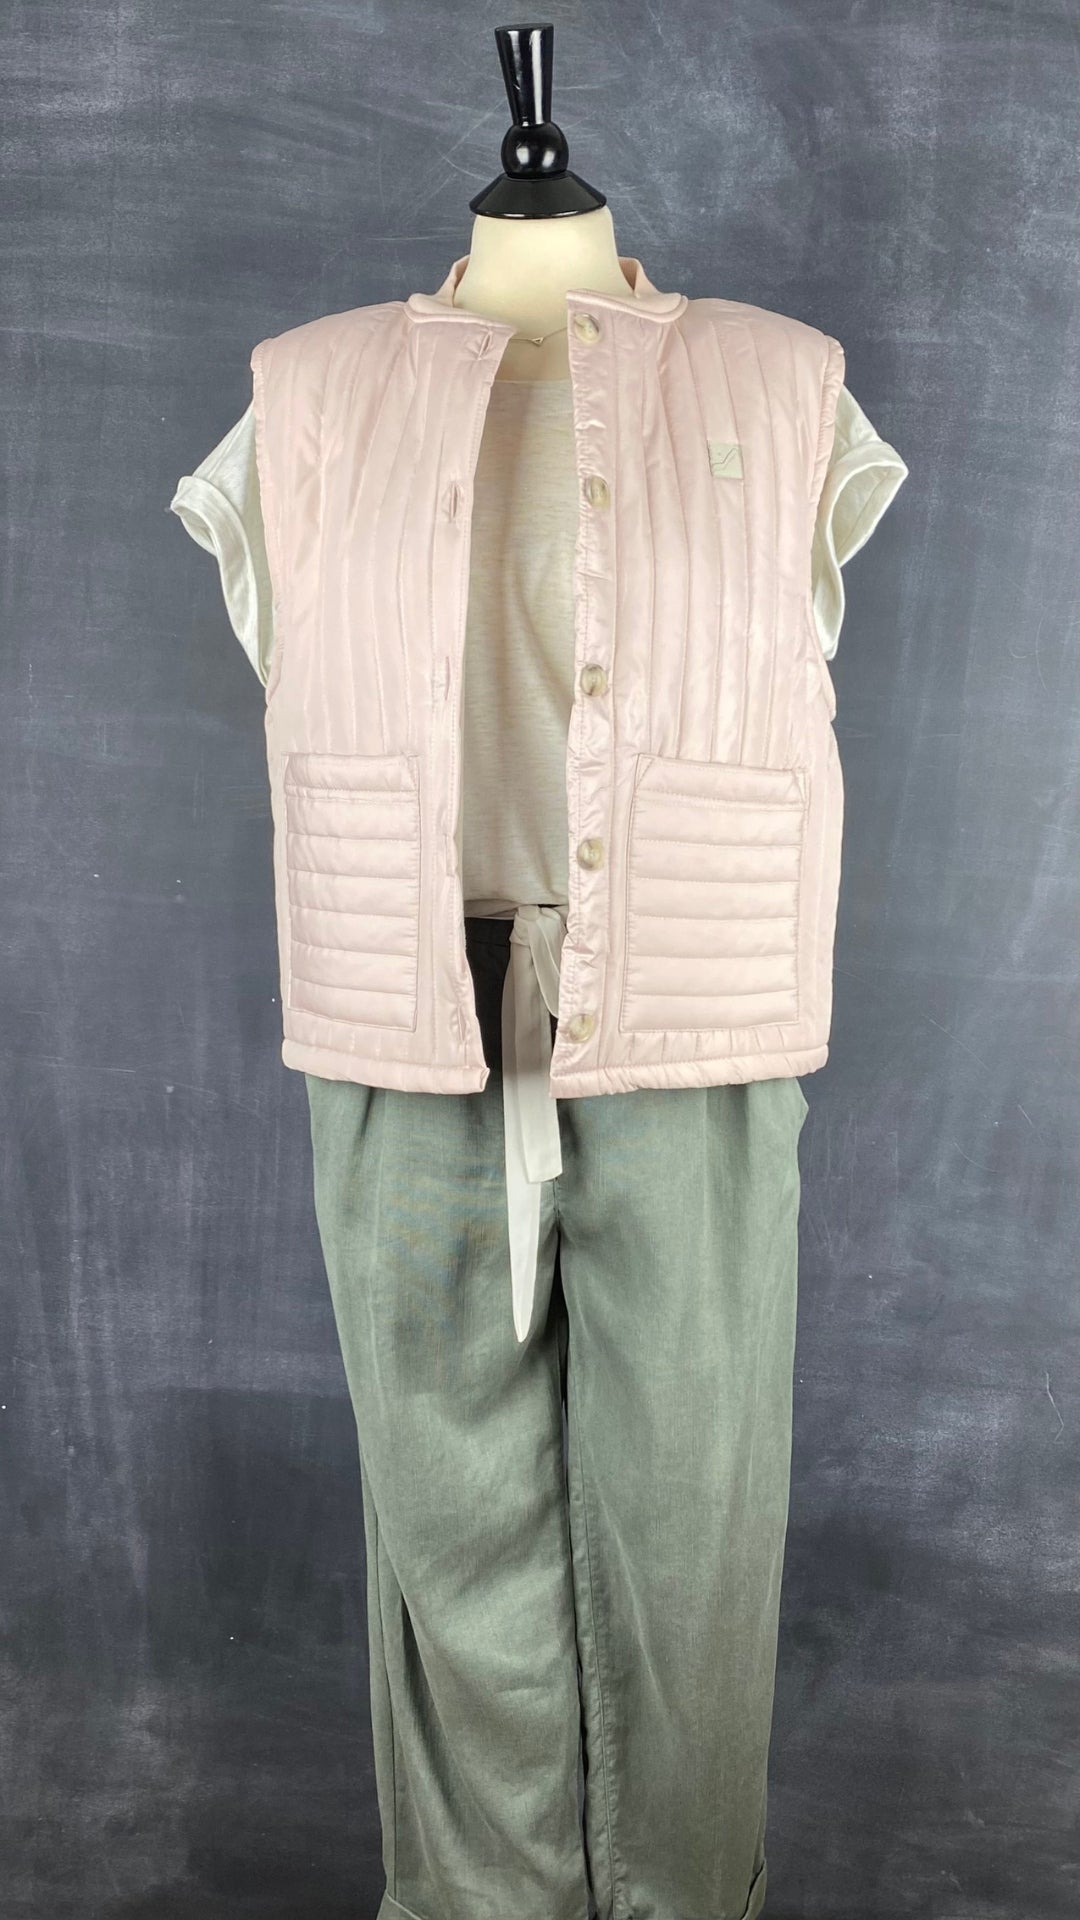 Pantalon vert en lyocell et lin Wilfred, taille 8. Vue de l'agencement avec le chandail crème et doré et la veste matelassée Louve.